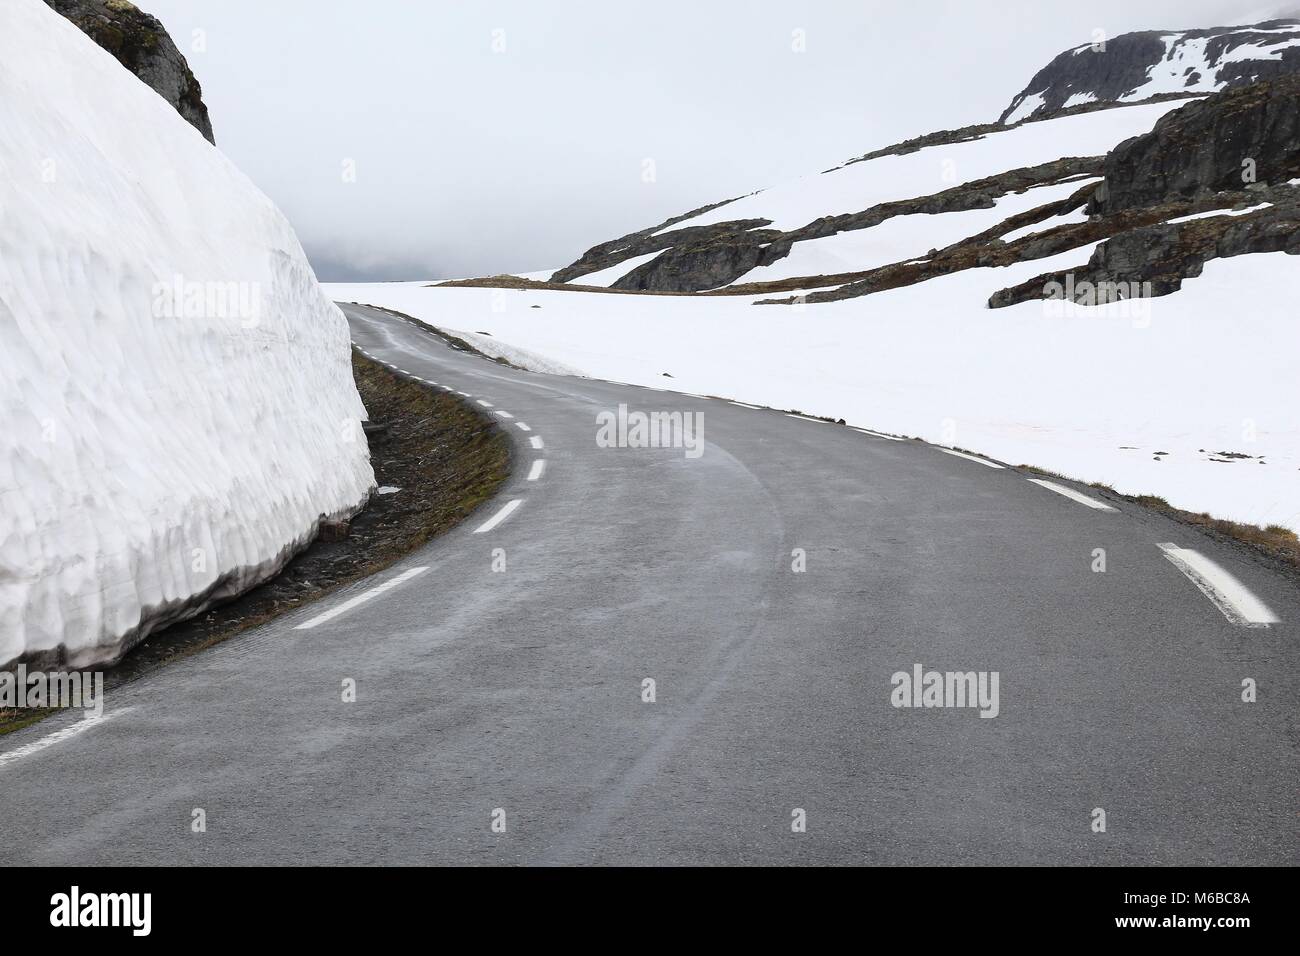 Route de la neige en Norvège - route touristique nationale à travers la montagne Aurland (Aurlandsfjellet). Vue d'été en juillet. Banque D'Images